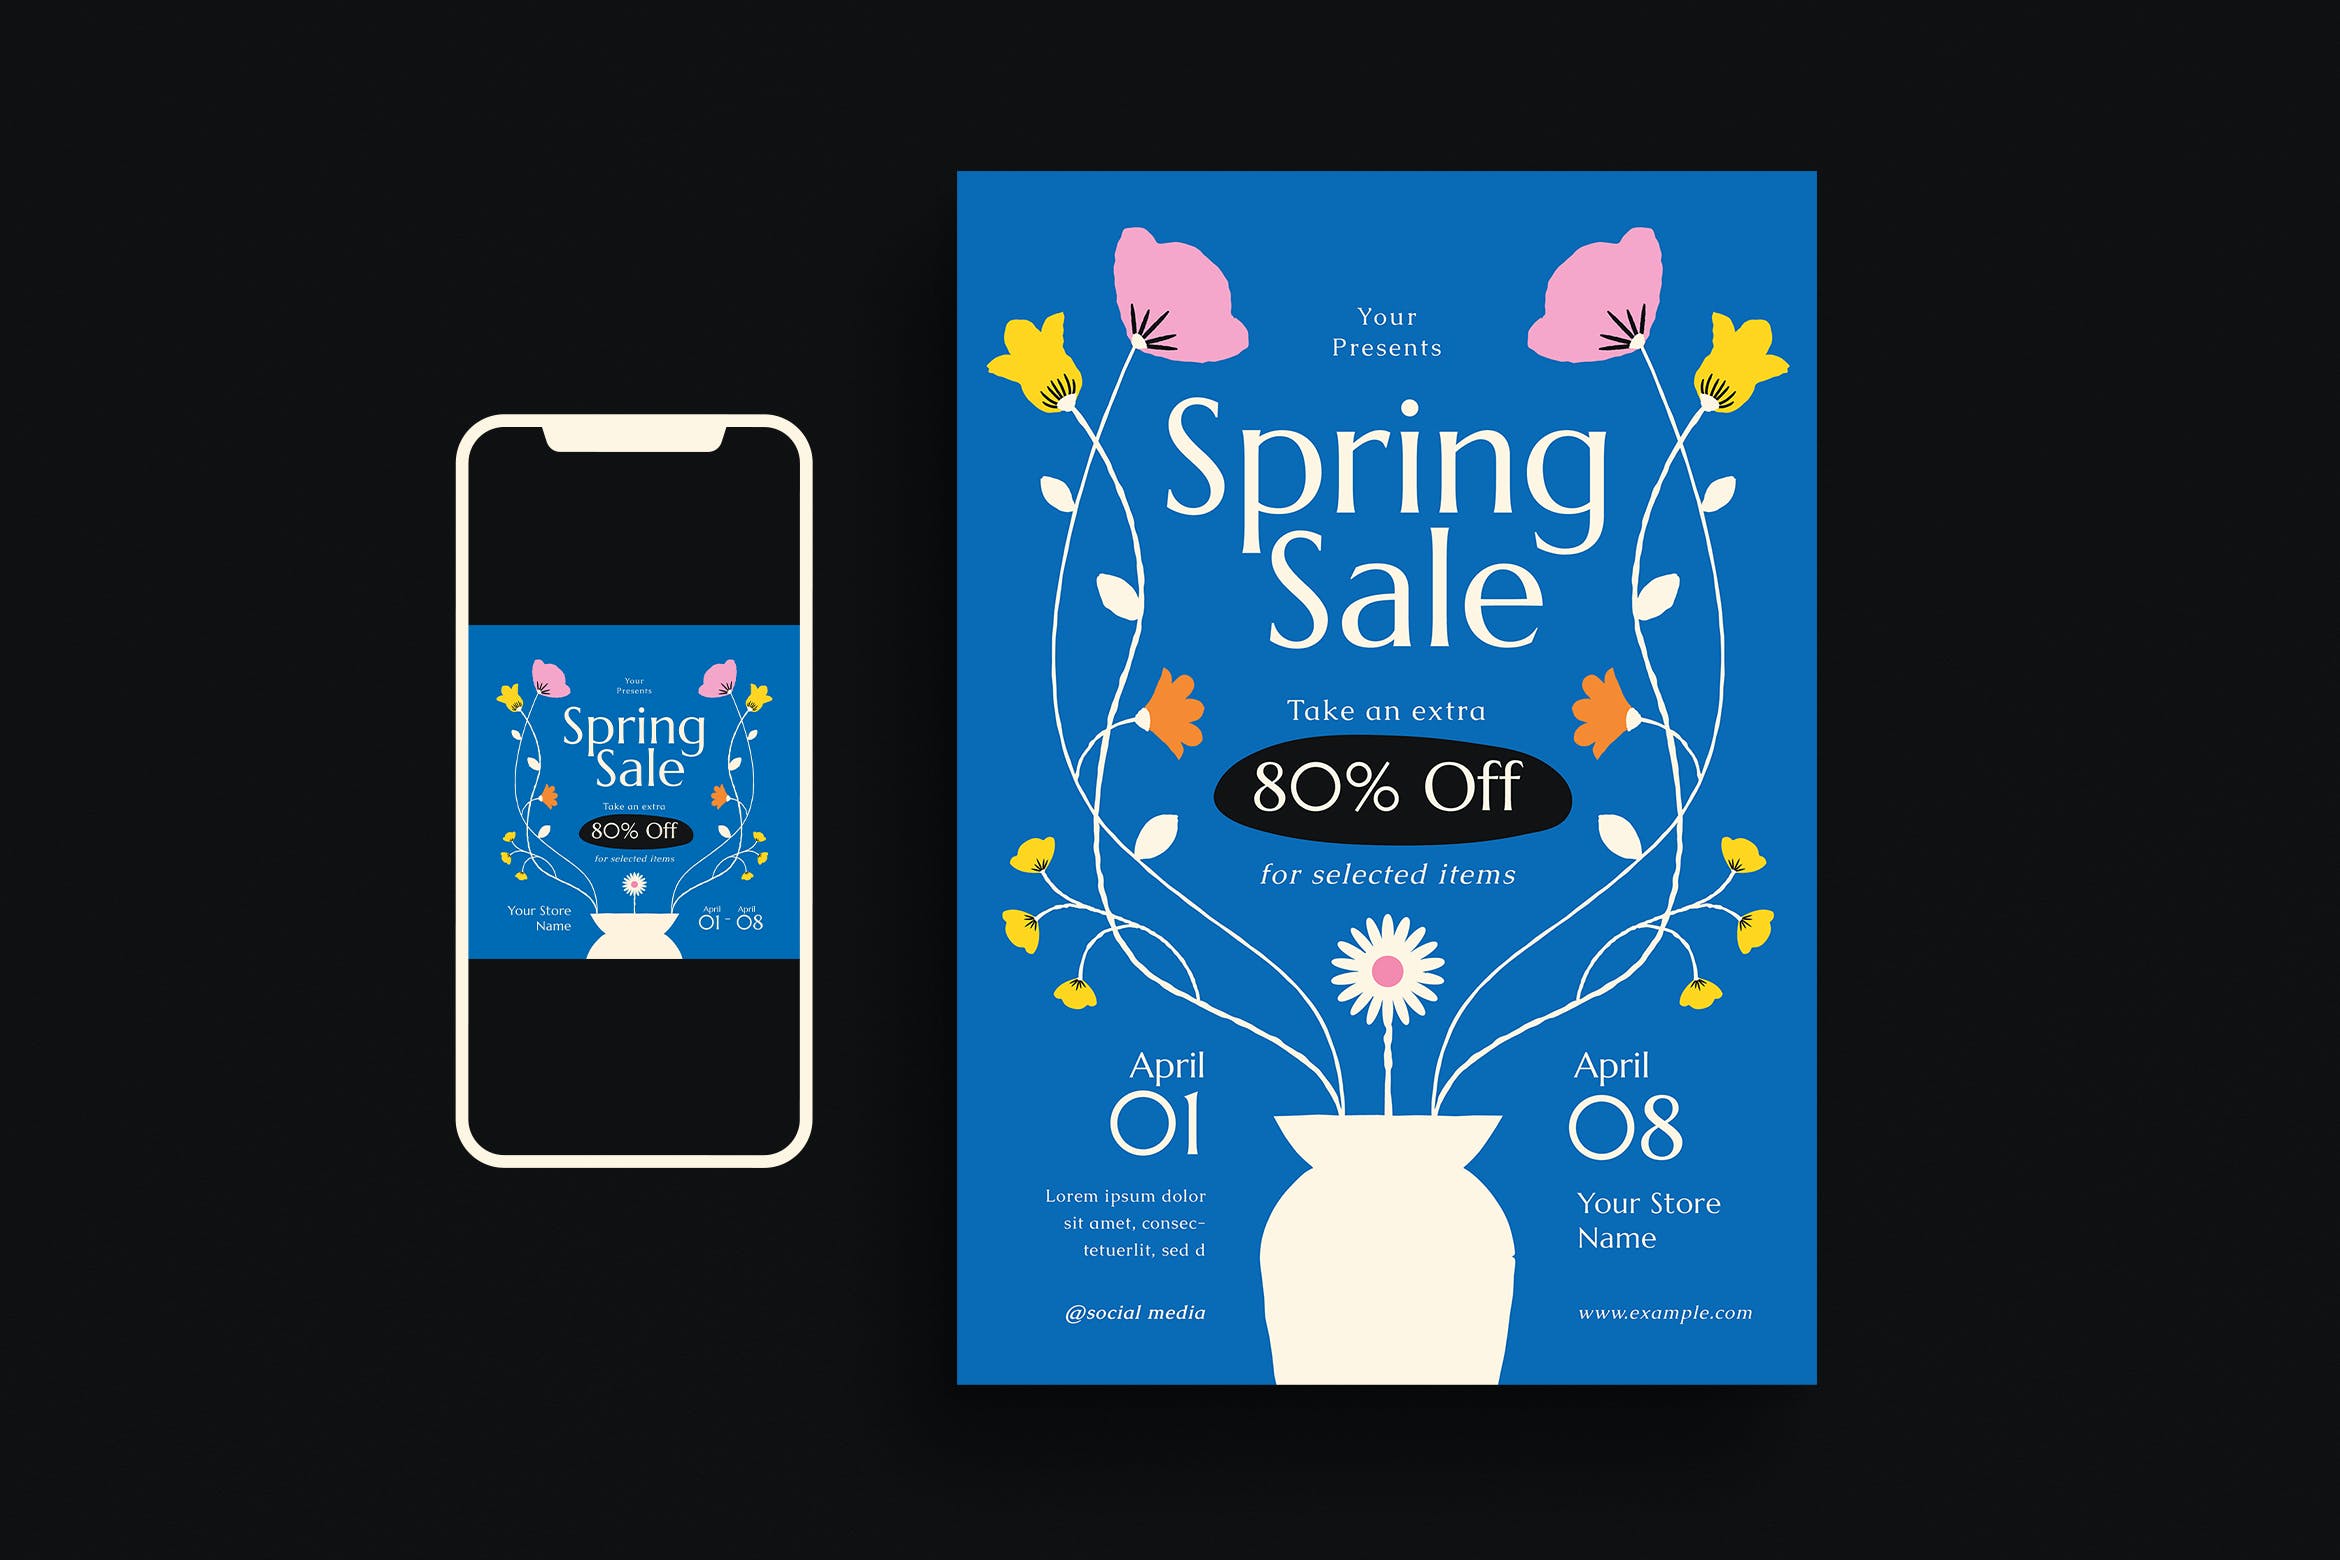 春季促销活动宣传单模板下载 Spring Sale Event Flyer Set 设计素材 第1张